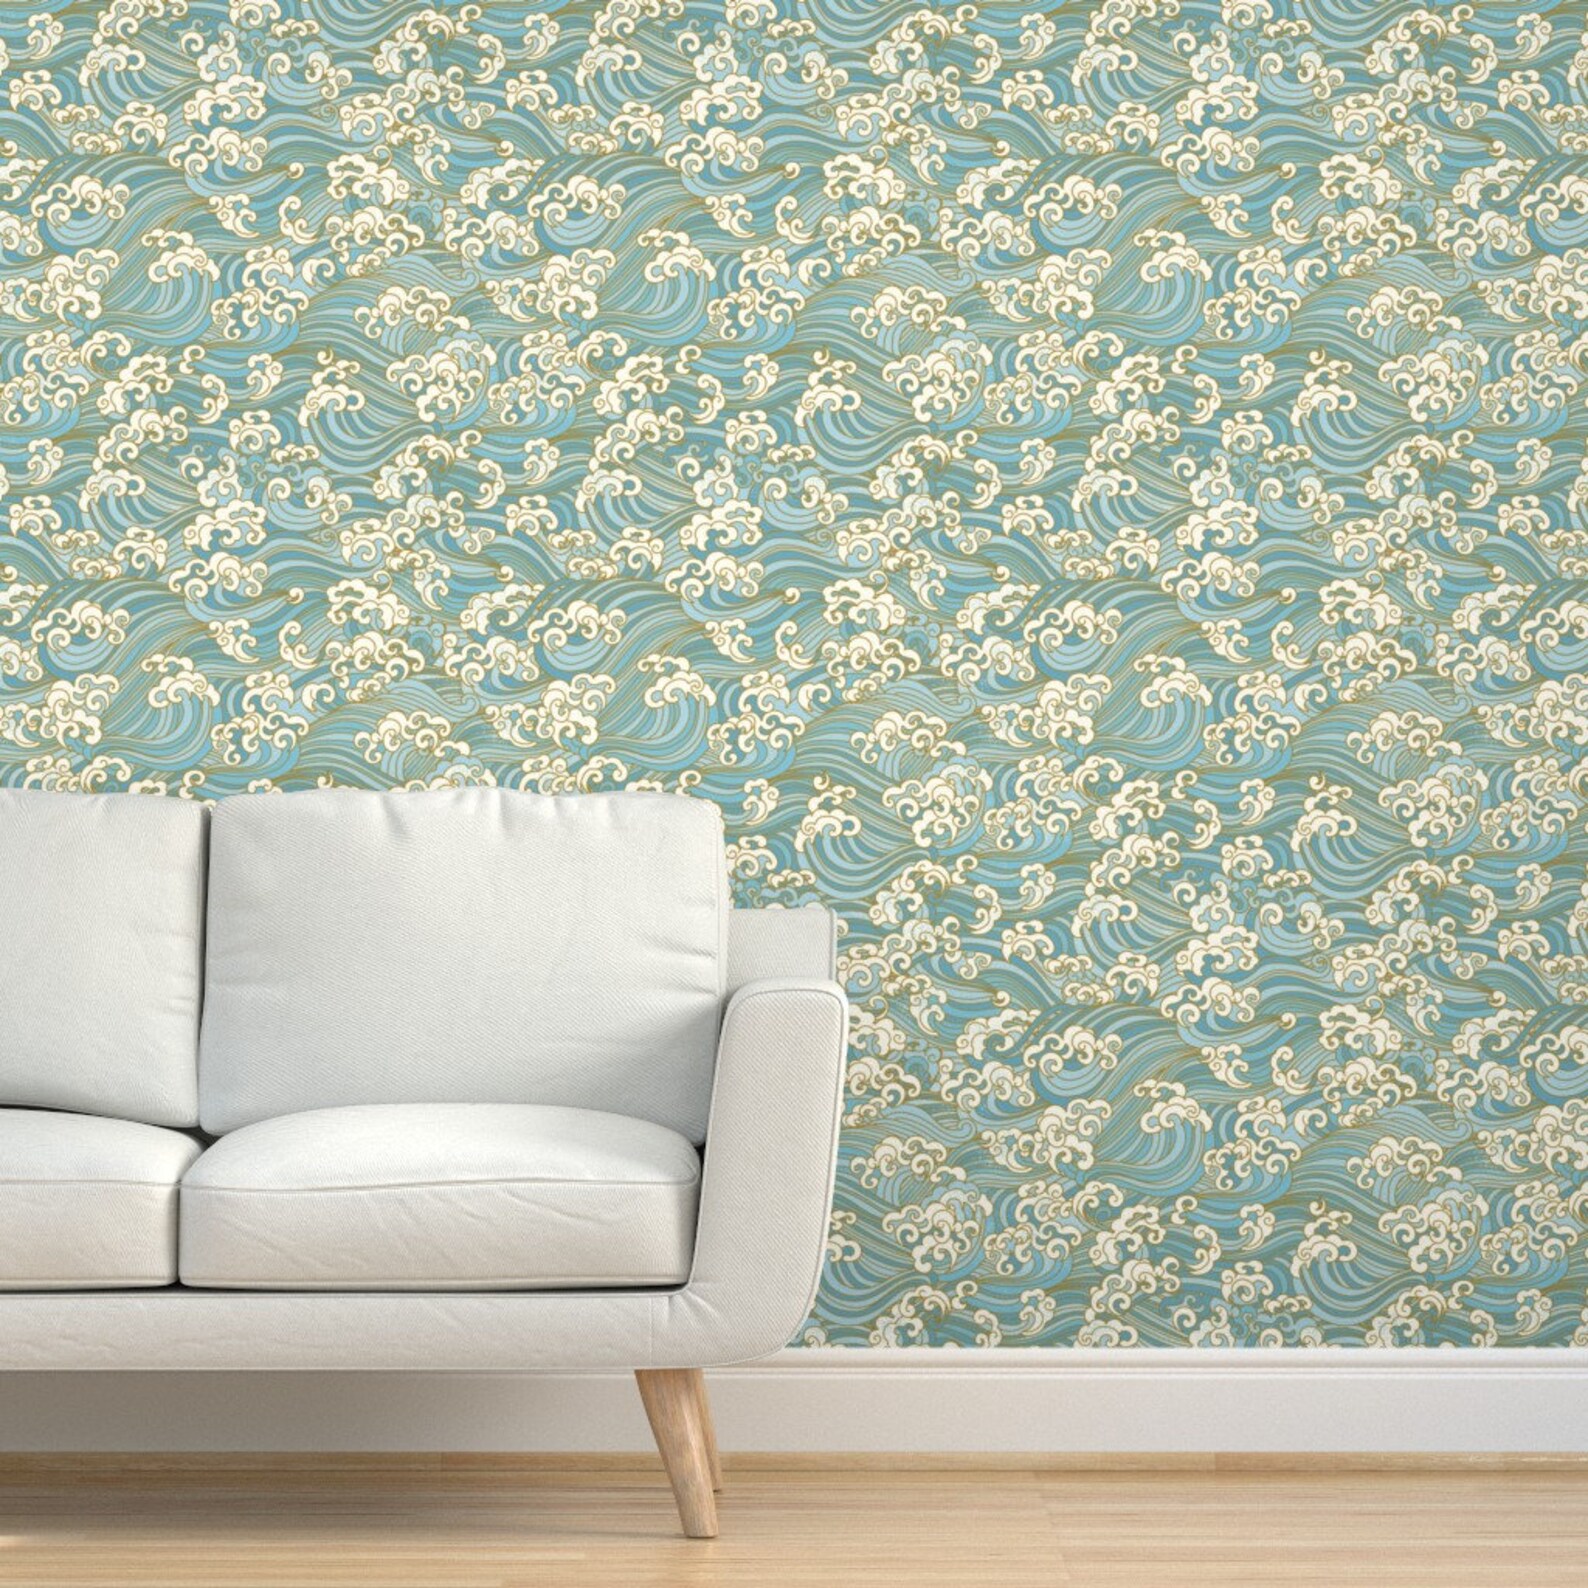 Hawaii Wallpaper Waves by Honoluludesigns Blue Cream Ocean - Etsy